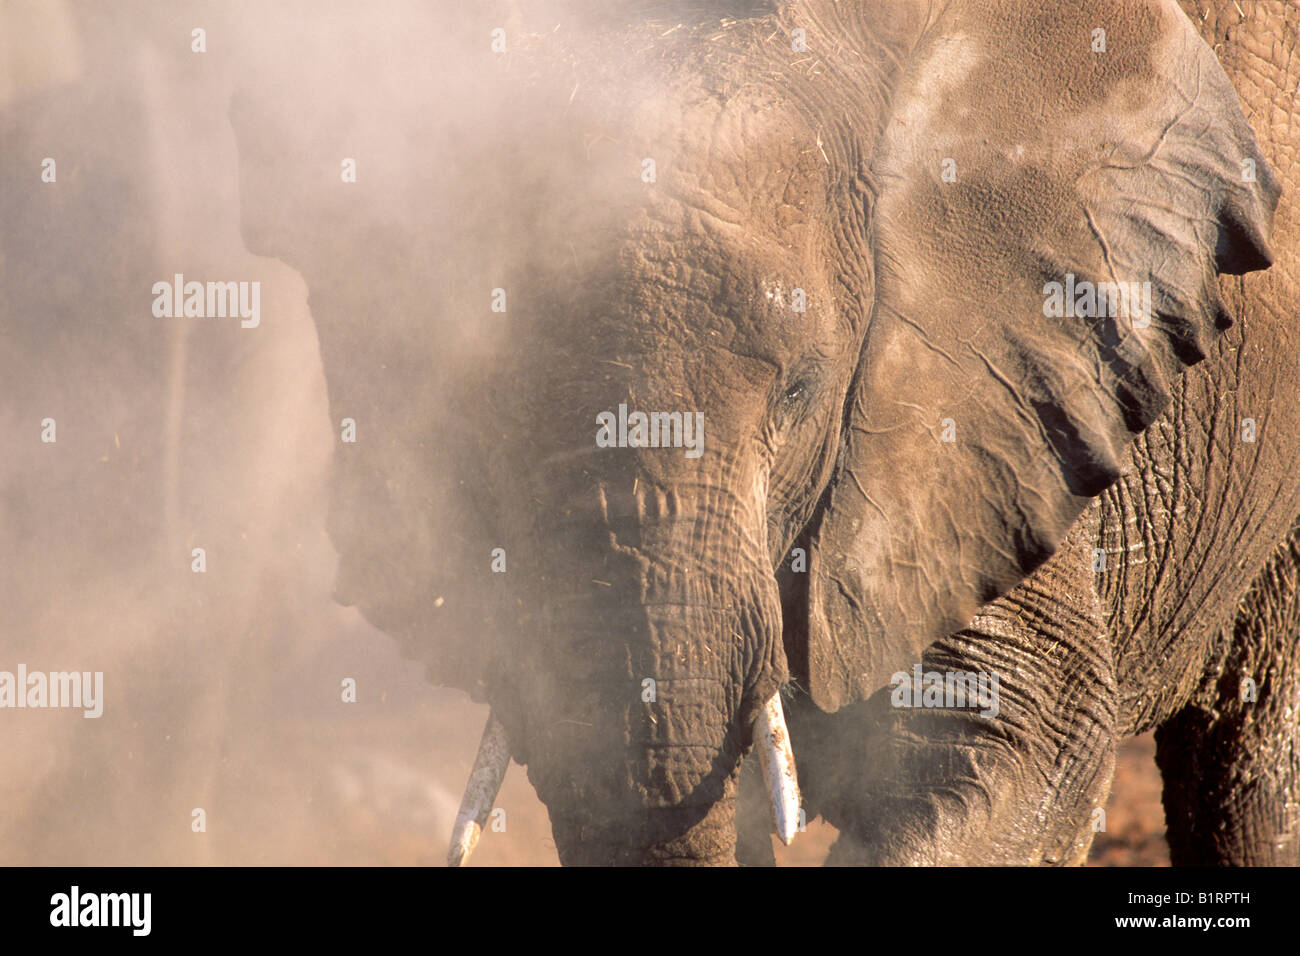 African Bush Elephant (Loxodonta africana) attacking, Etosha National Park, Namibia, Africa Stock Photo